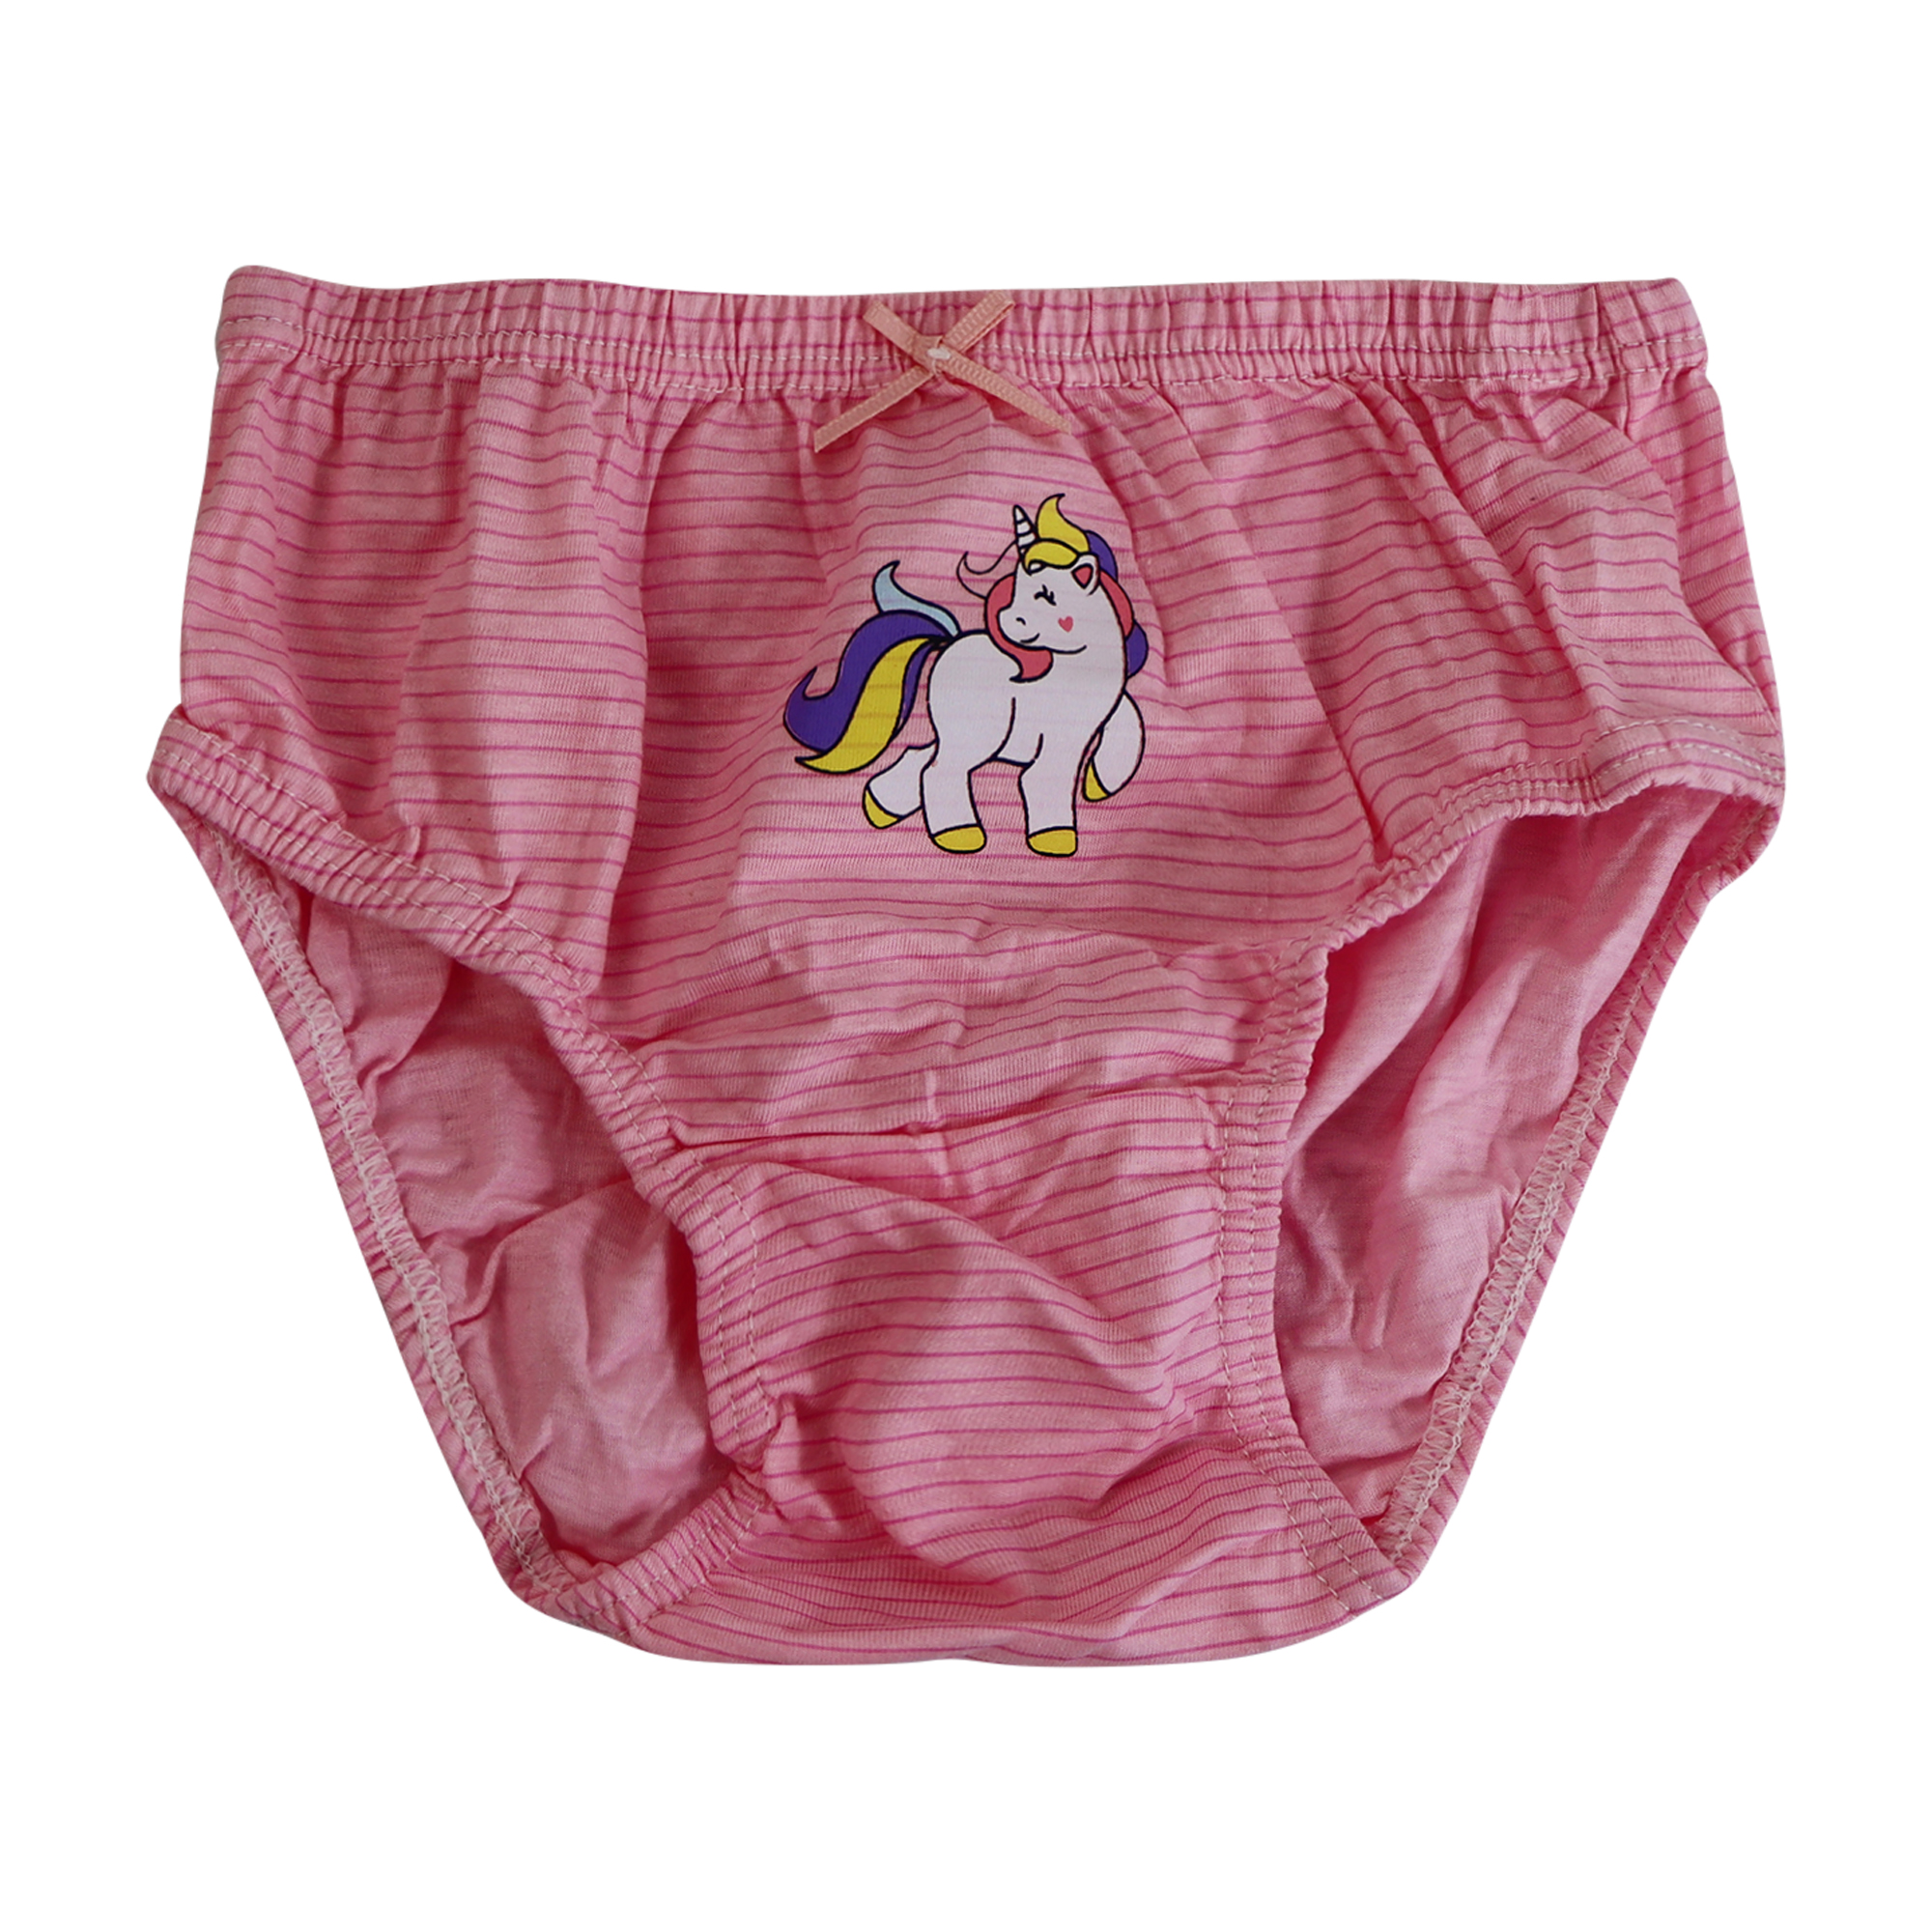 Premium Unicorn Girls Underwear 100% Cotton 5 Pack Size 3-7 Years